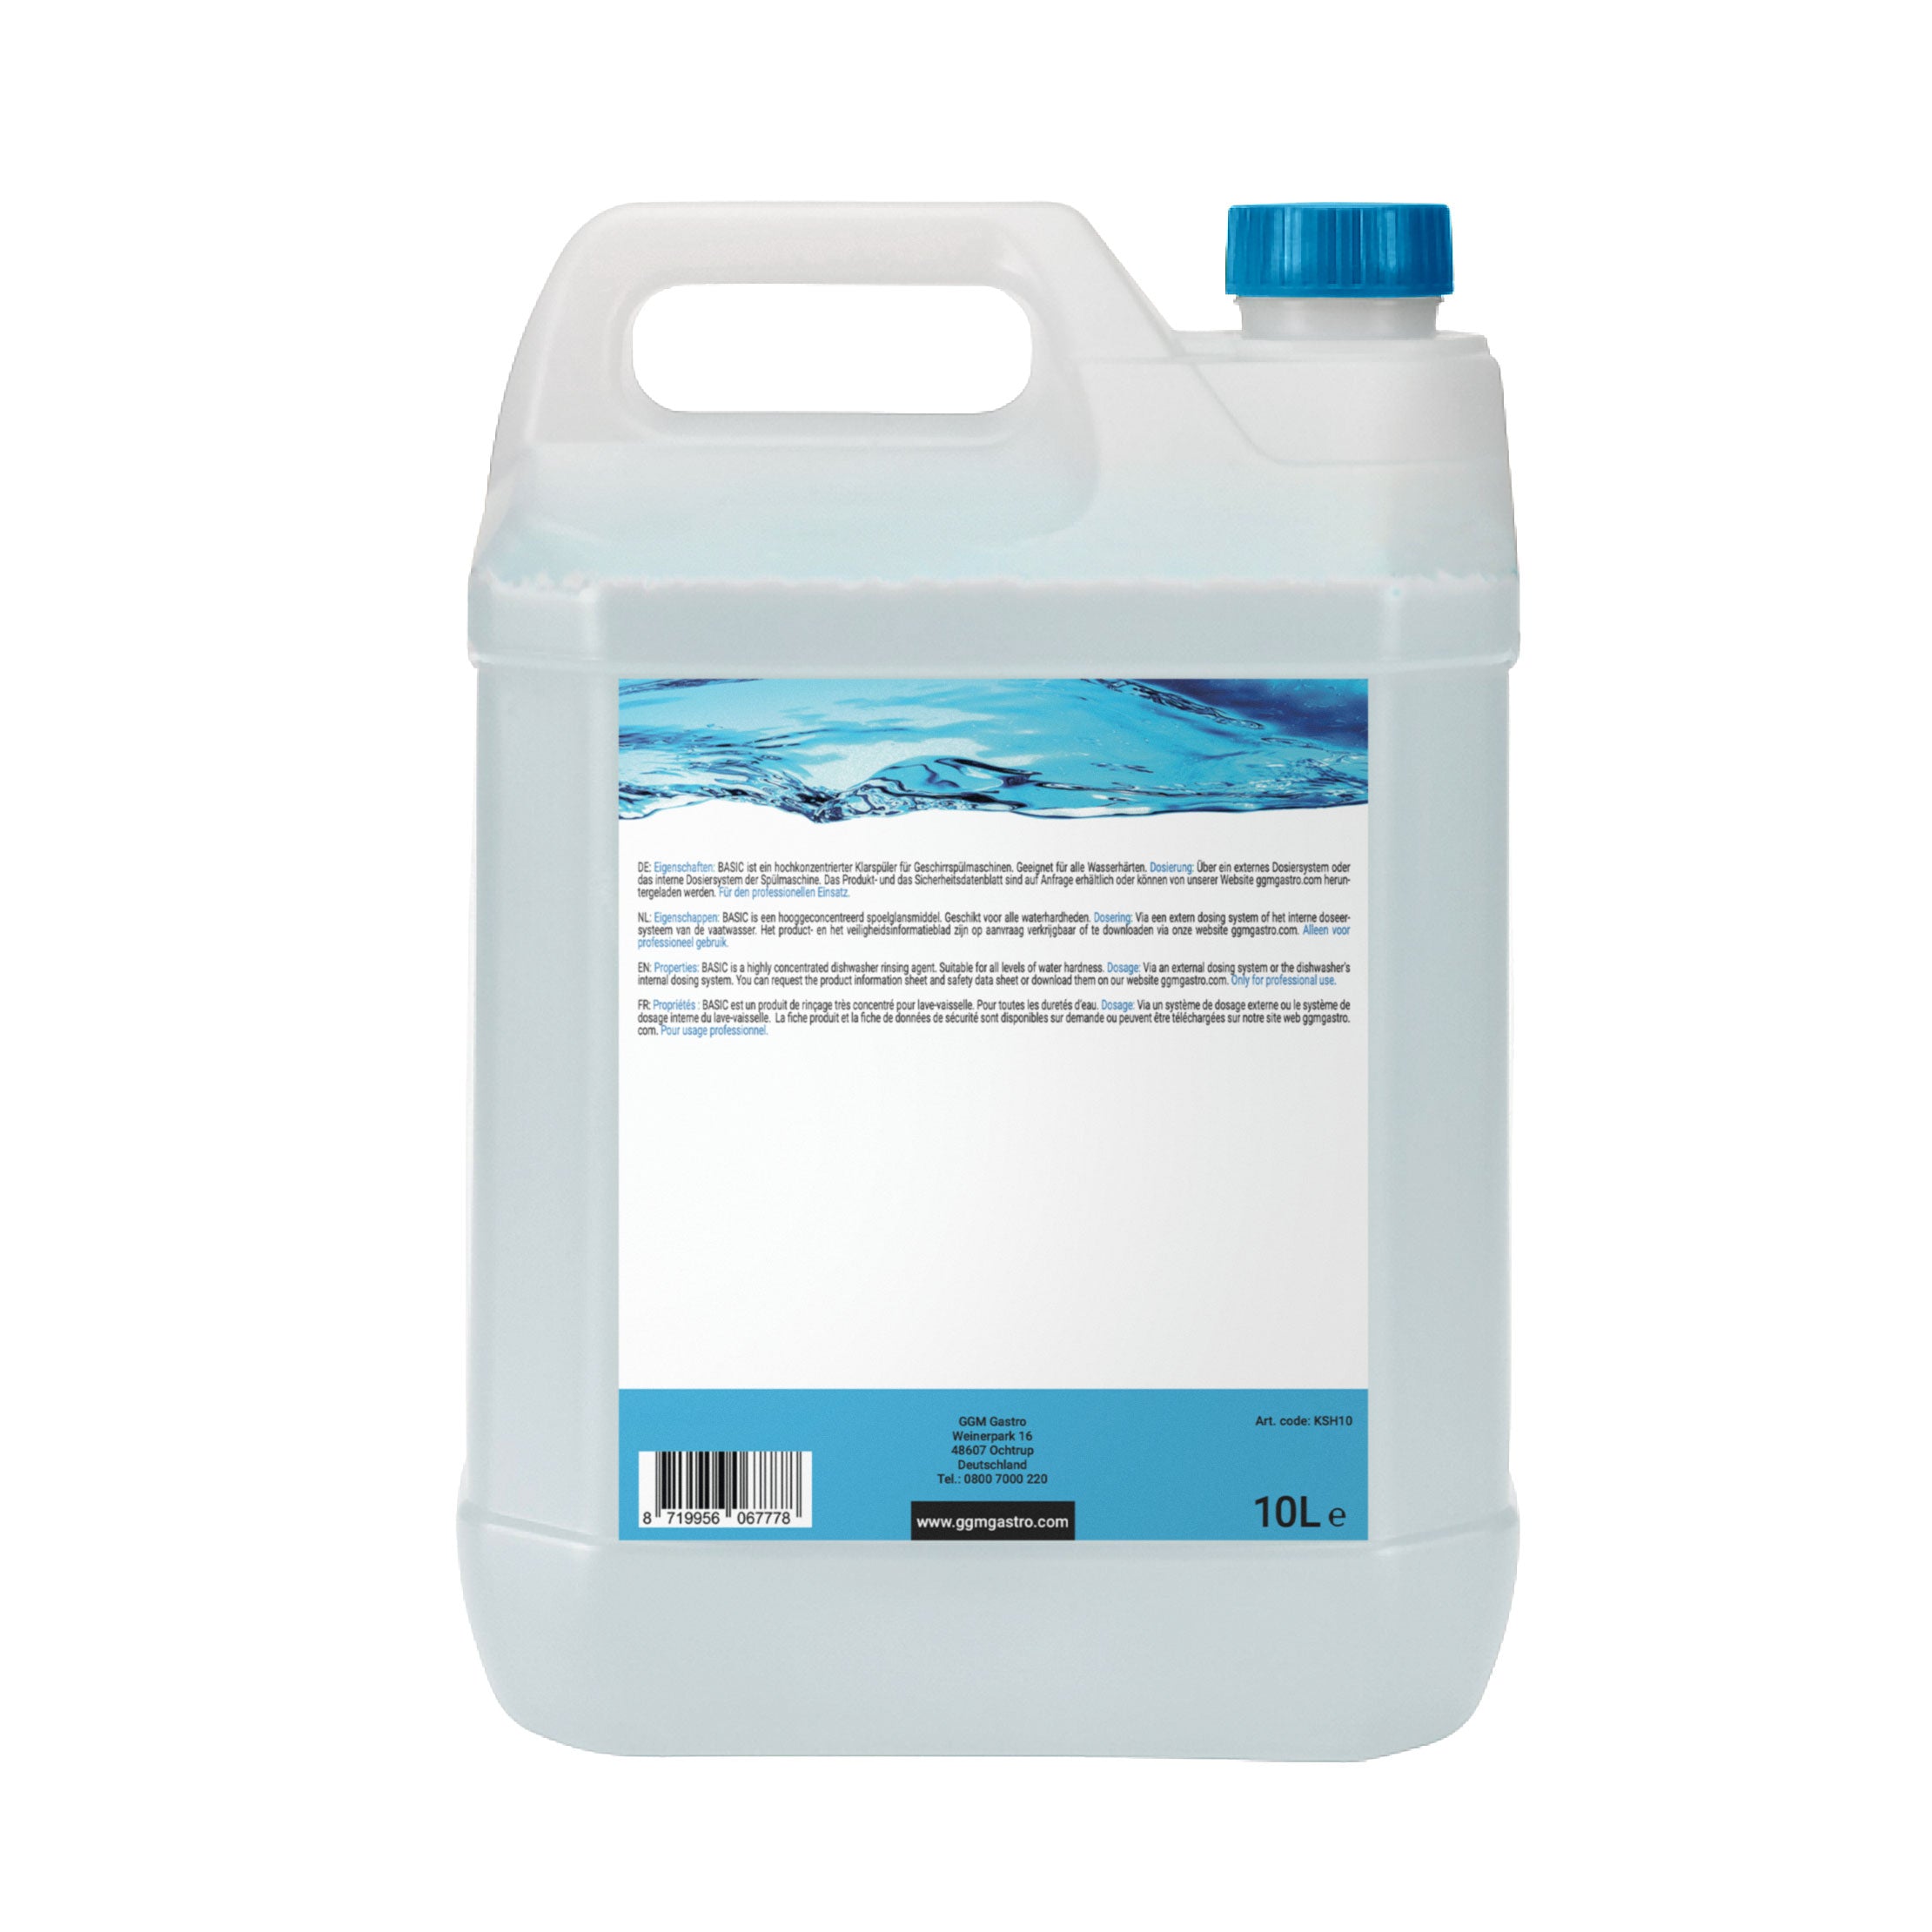 Skyllemiddel - 10 liter - Økologisk/miljøvenlig